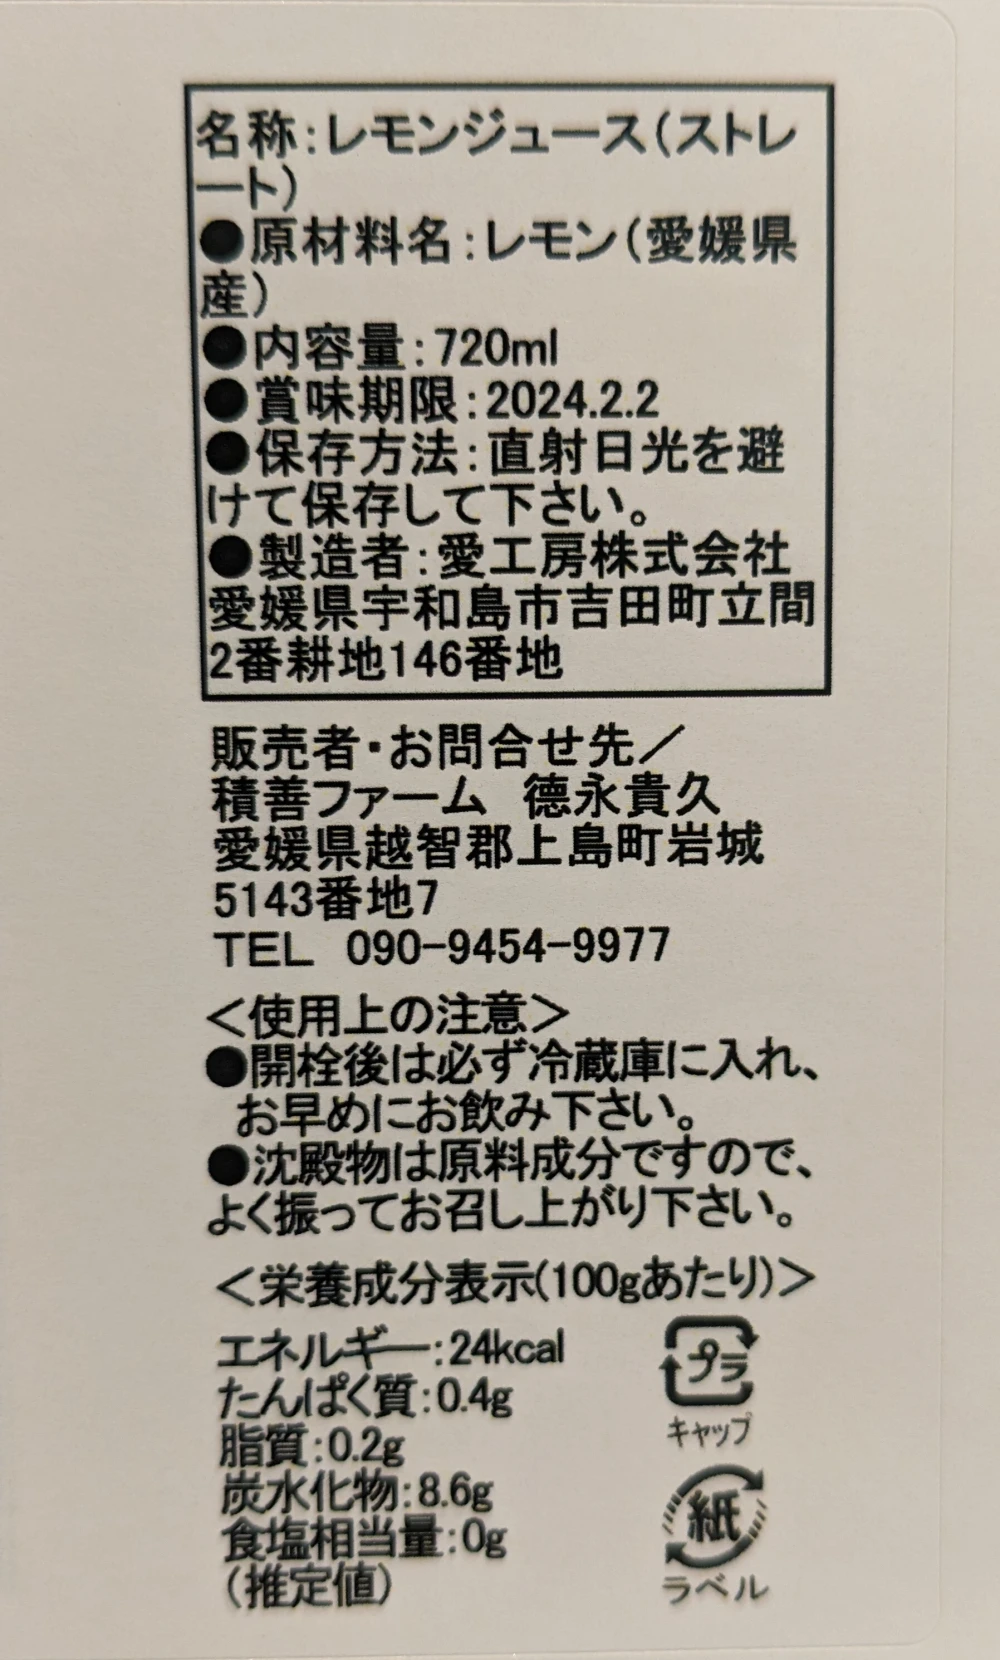 愛媛県産 レモン果汁 720ml×6本